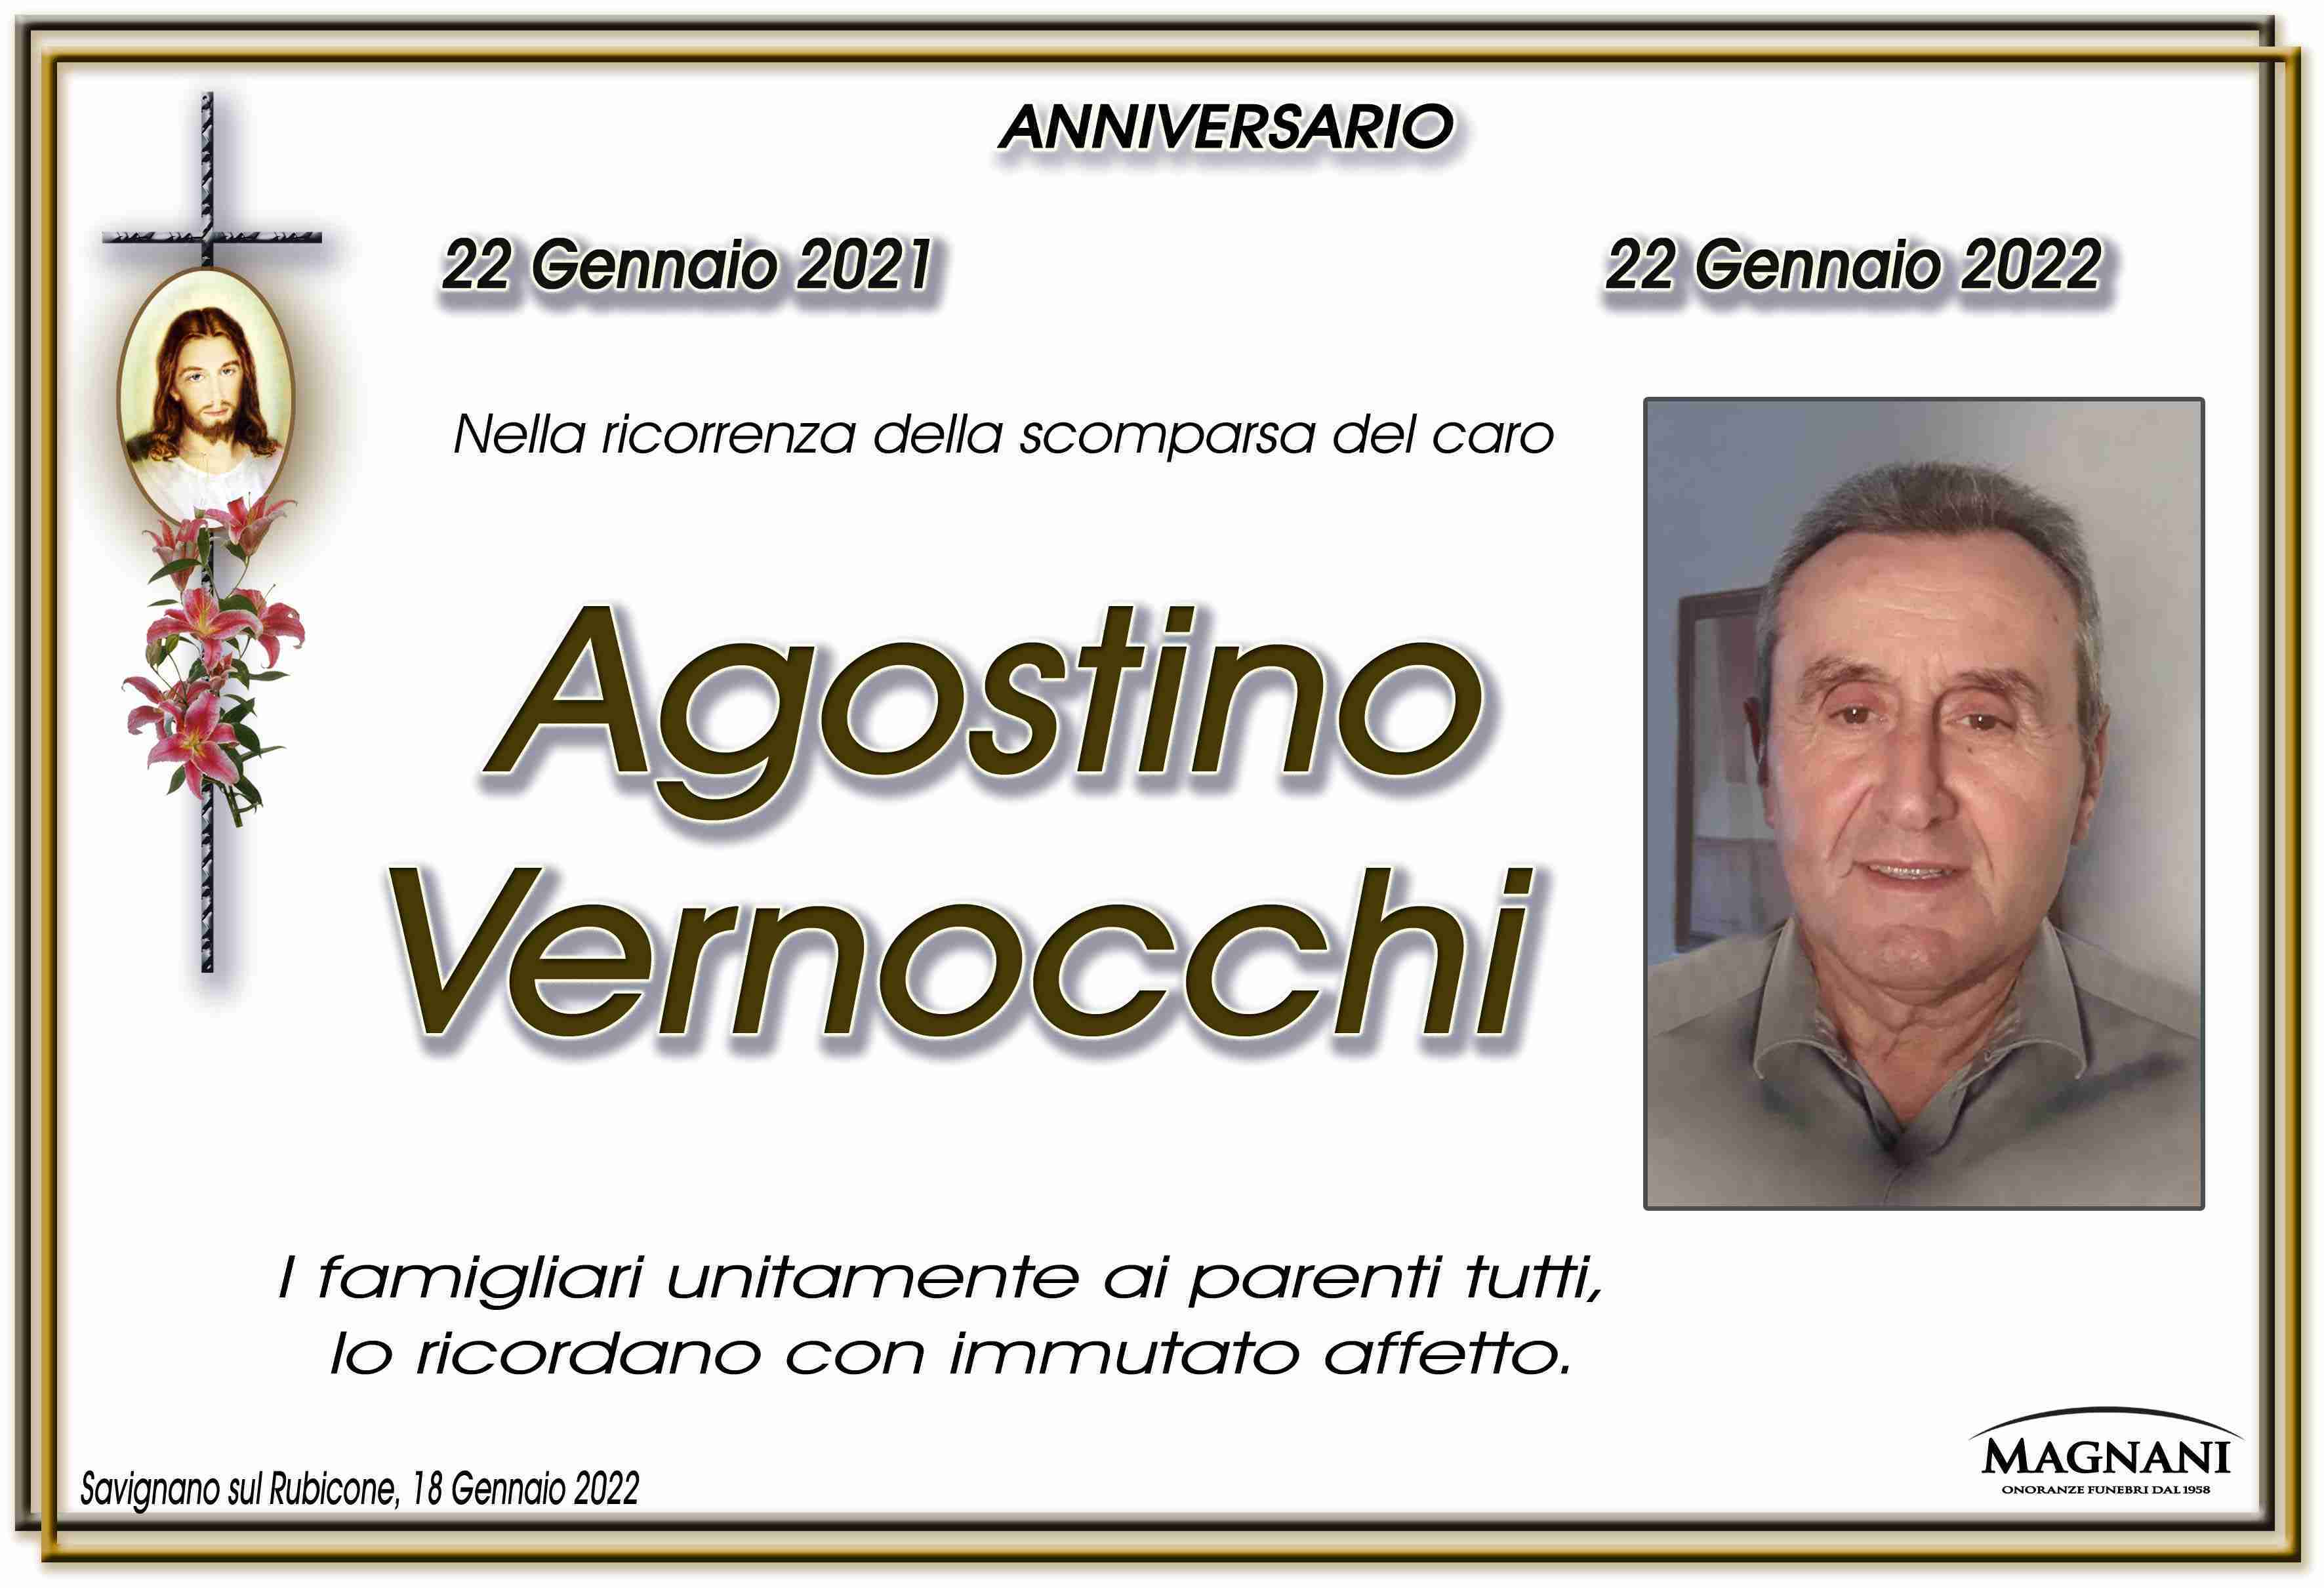 Agostino Vernocchi